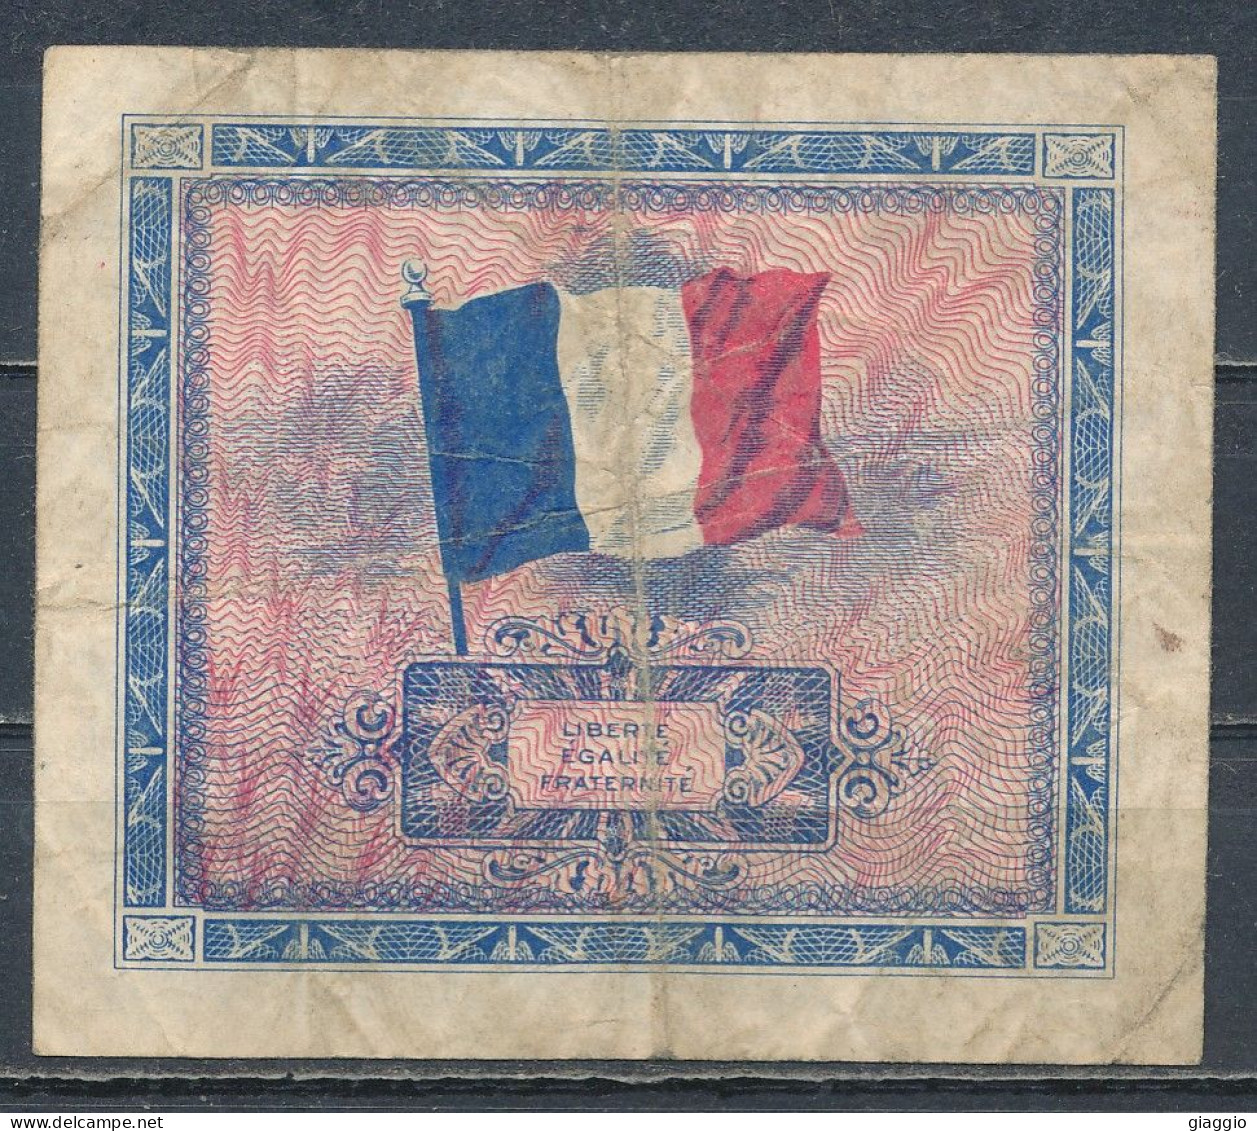 °°° FRANCE 2 FRANCS ALLIED MILITARY CURRENCY 1944 °°° - 1944 Vlag/Frankrijk